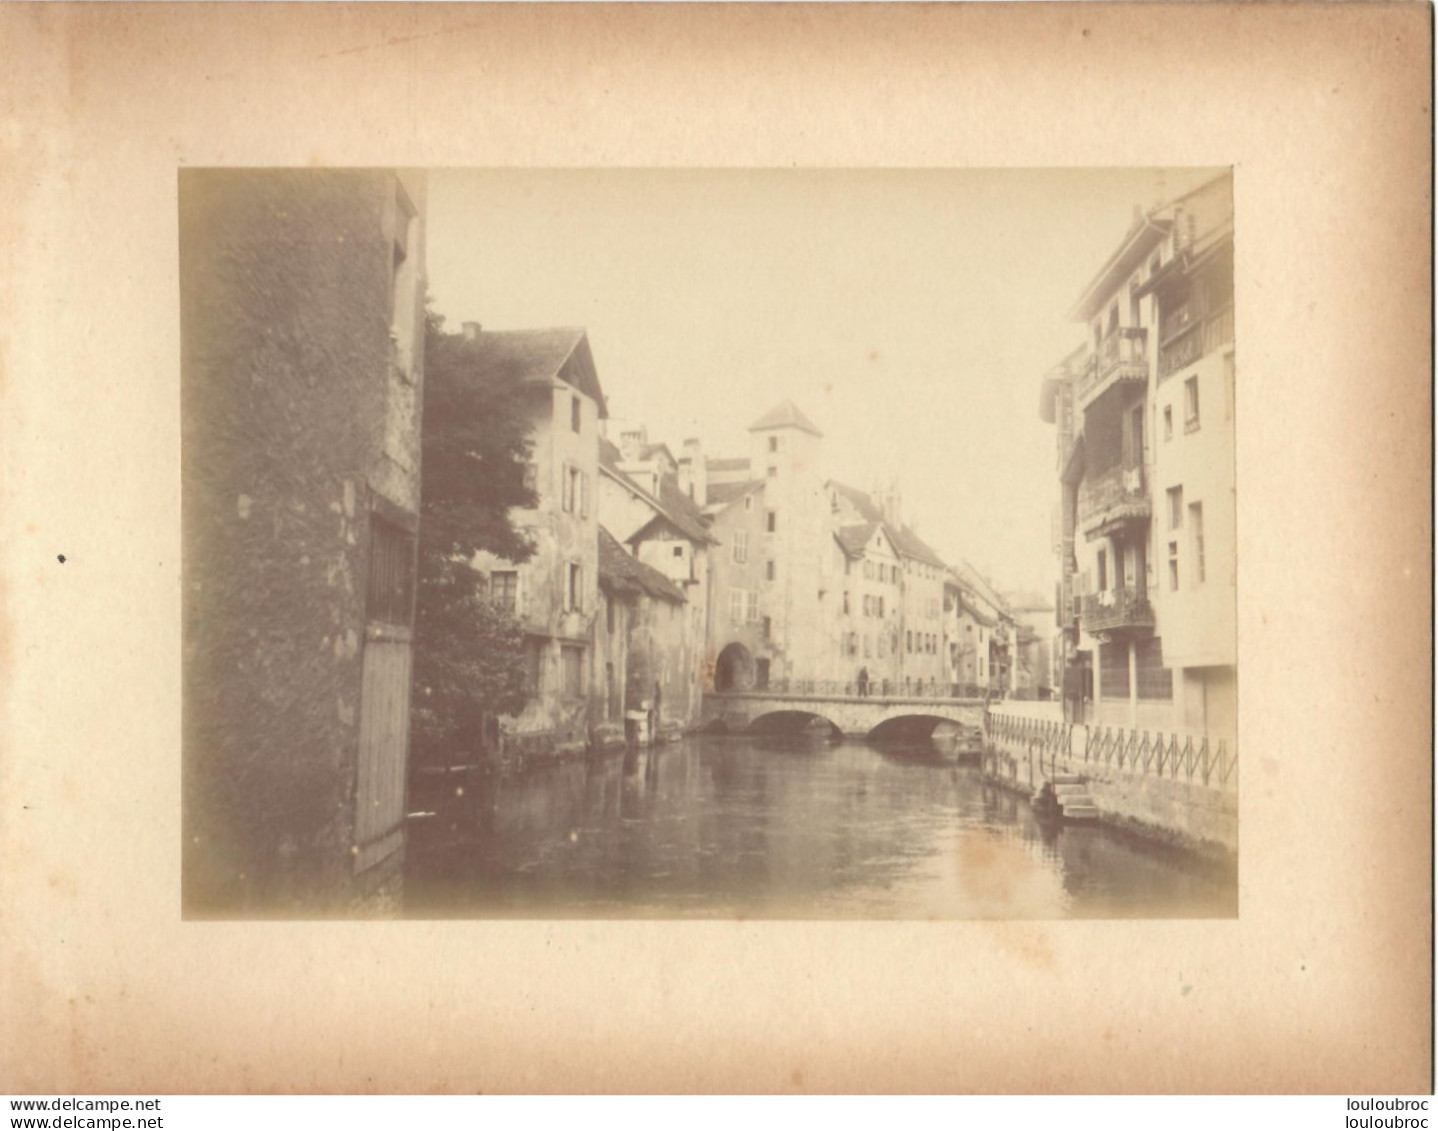 ANNECY CANAL DE THIOUX FIN 19em PHOTO ORIGINALE SUR CARTON 23x18CM FORMAT PHOTO 16X12CM - Anciennes (Av. 1900)